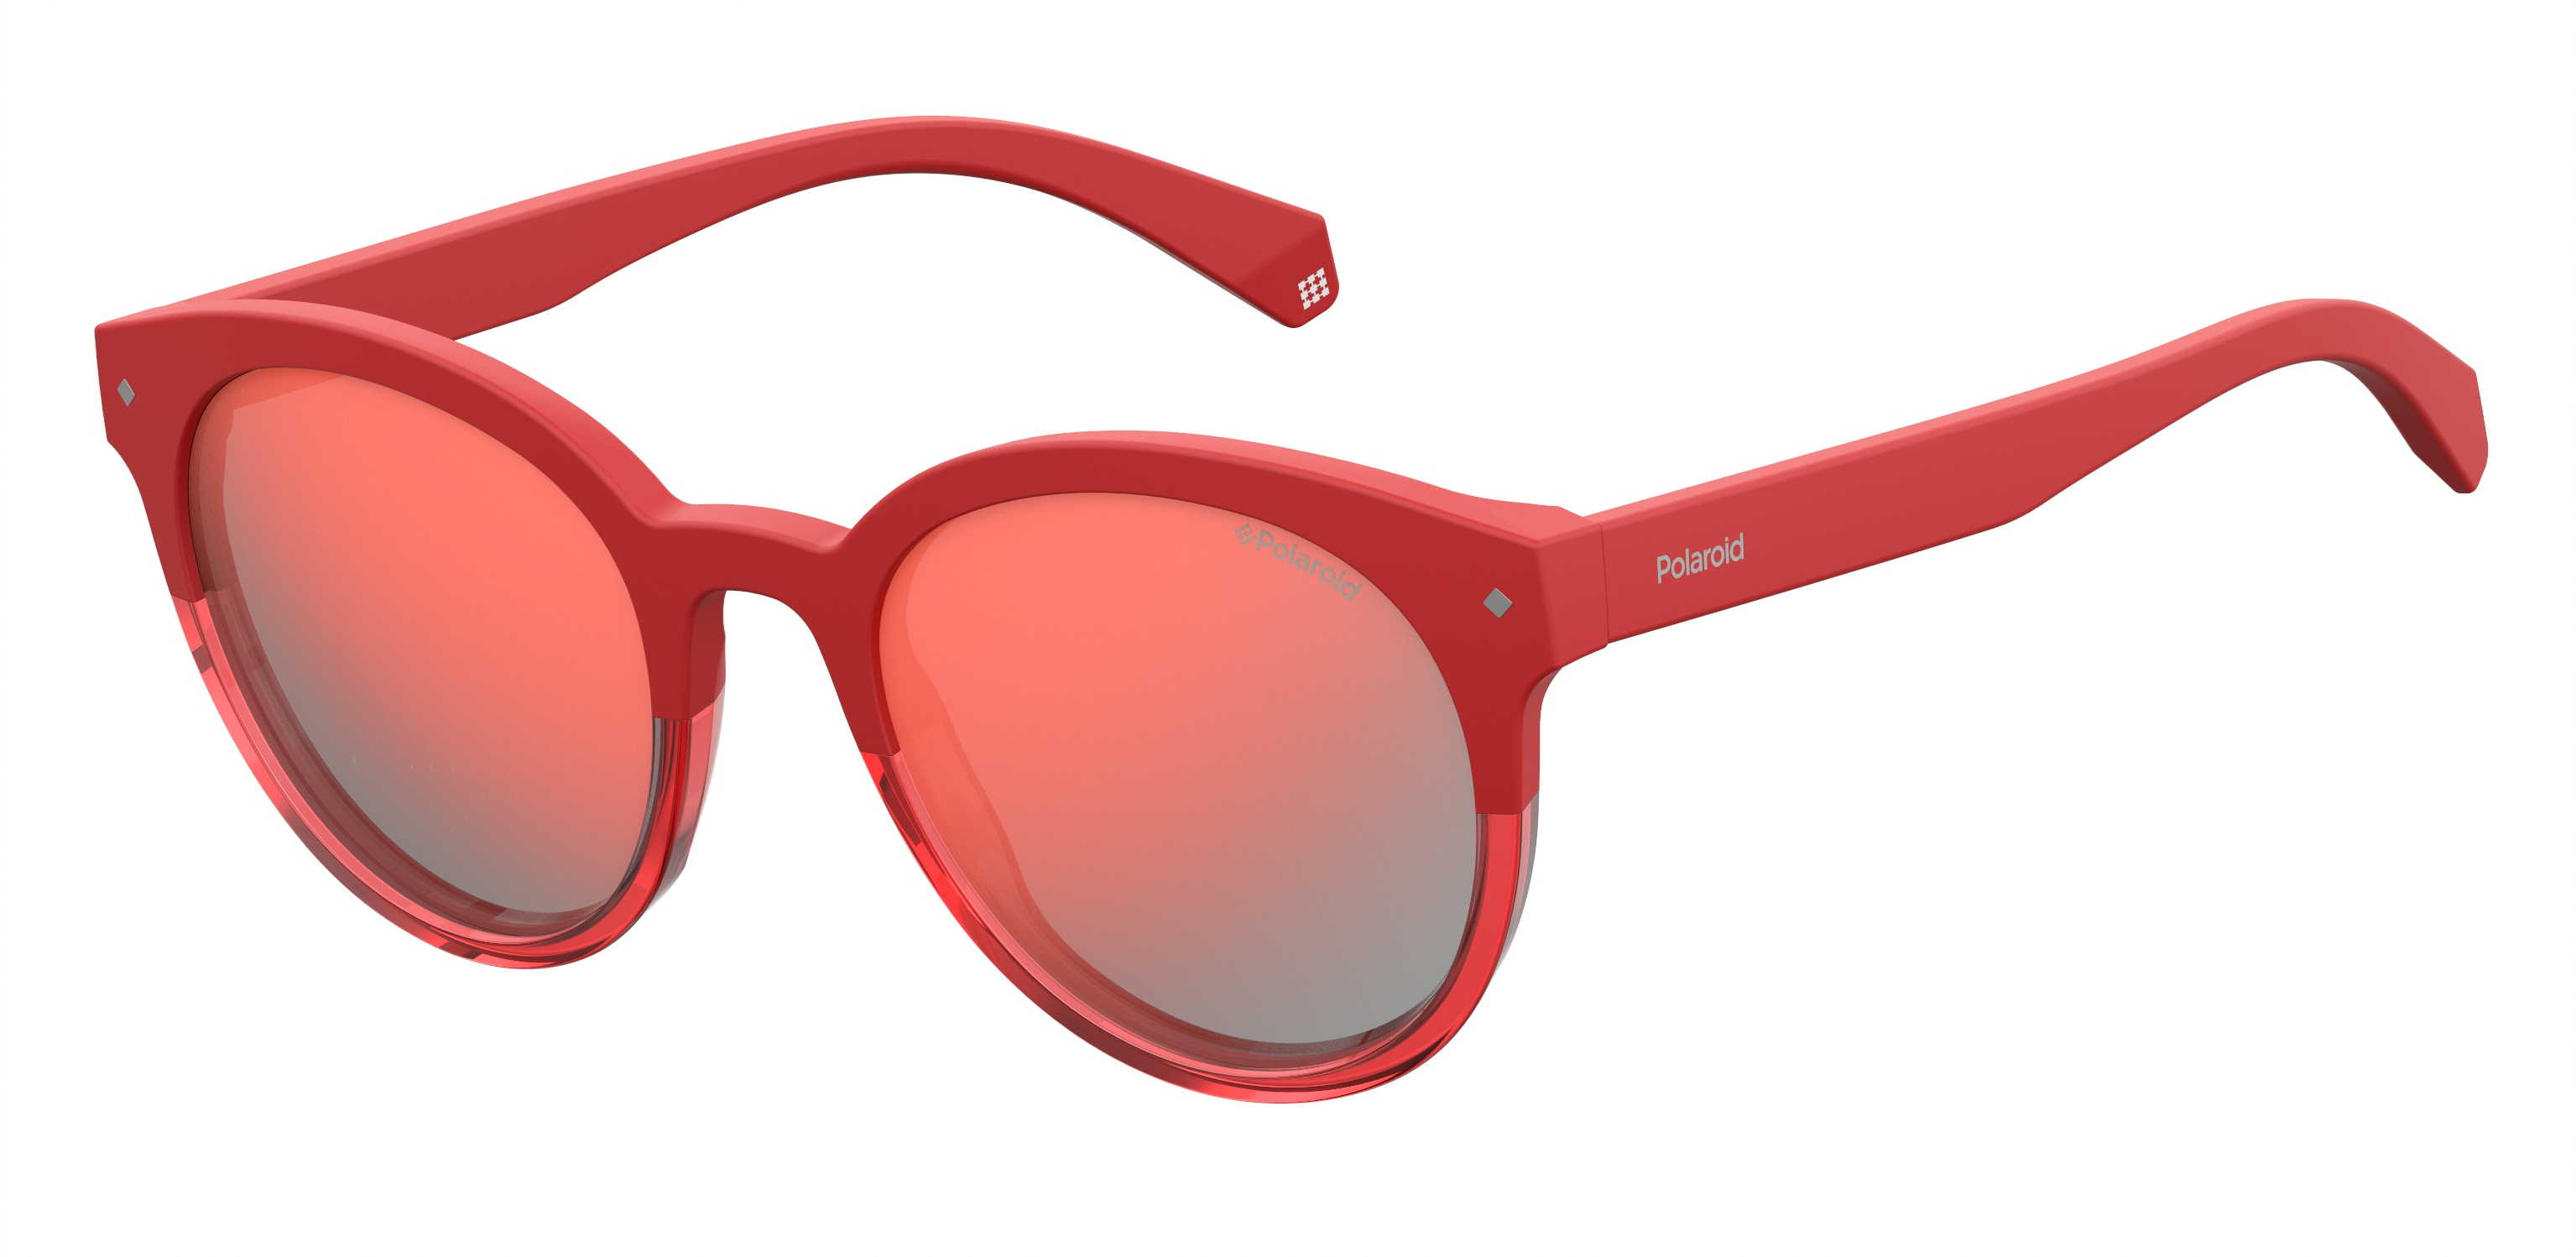 Мужские красные очки солнцезащитные. Polaroid PLD 6043/S. Очки полароид 6043. Солнцезащитные очки женские Polaroid PLD 6043/S. Очки Polaroid PLD 6043/F/S.